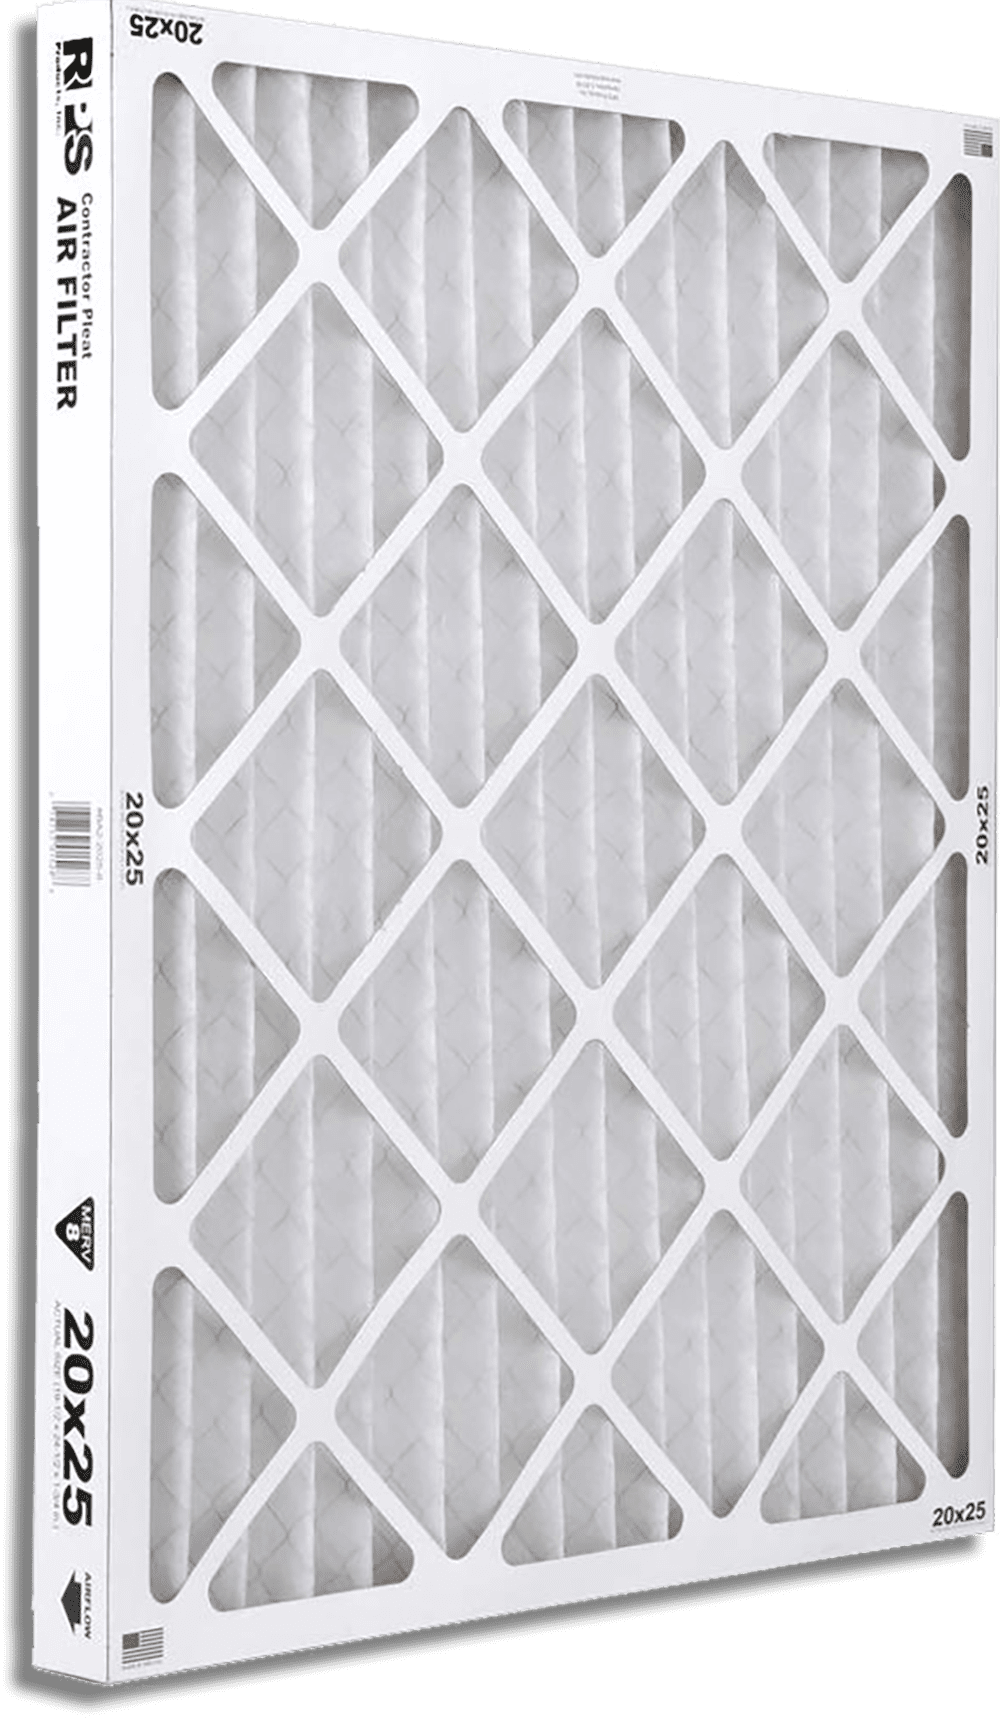 BLG2-2025-3 Furnace Filter Rack 20x25 